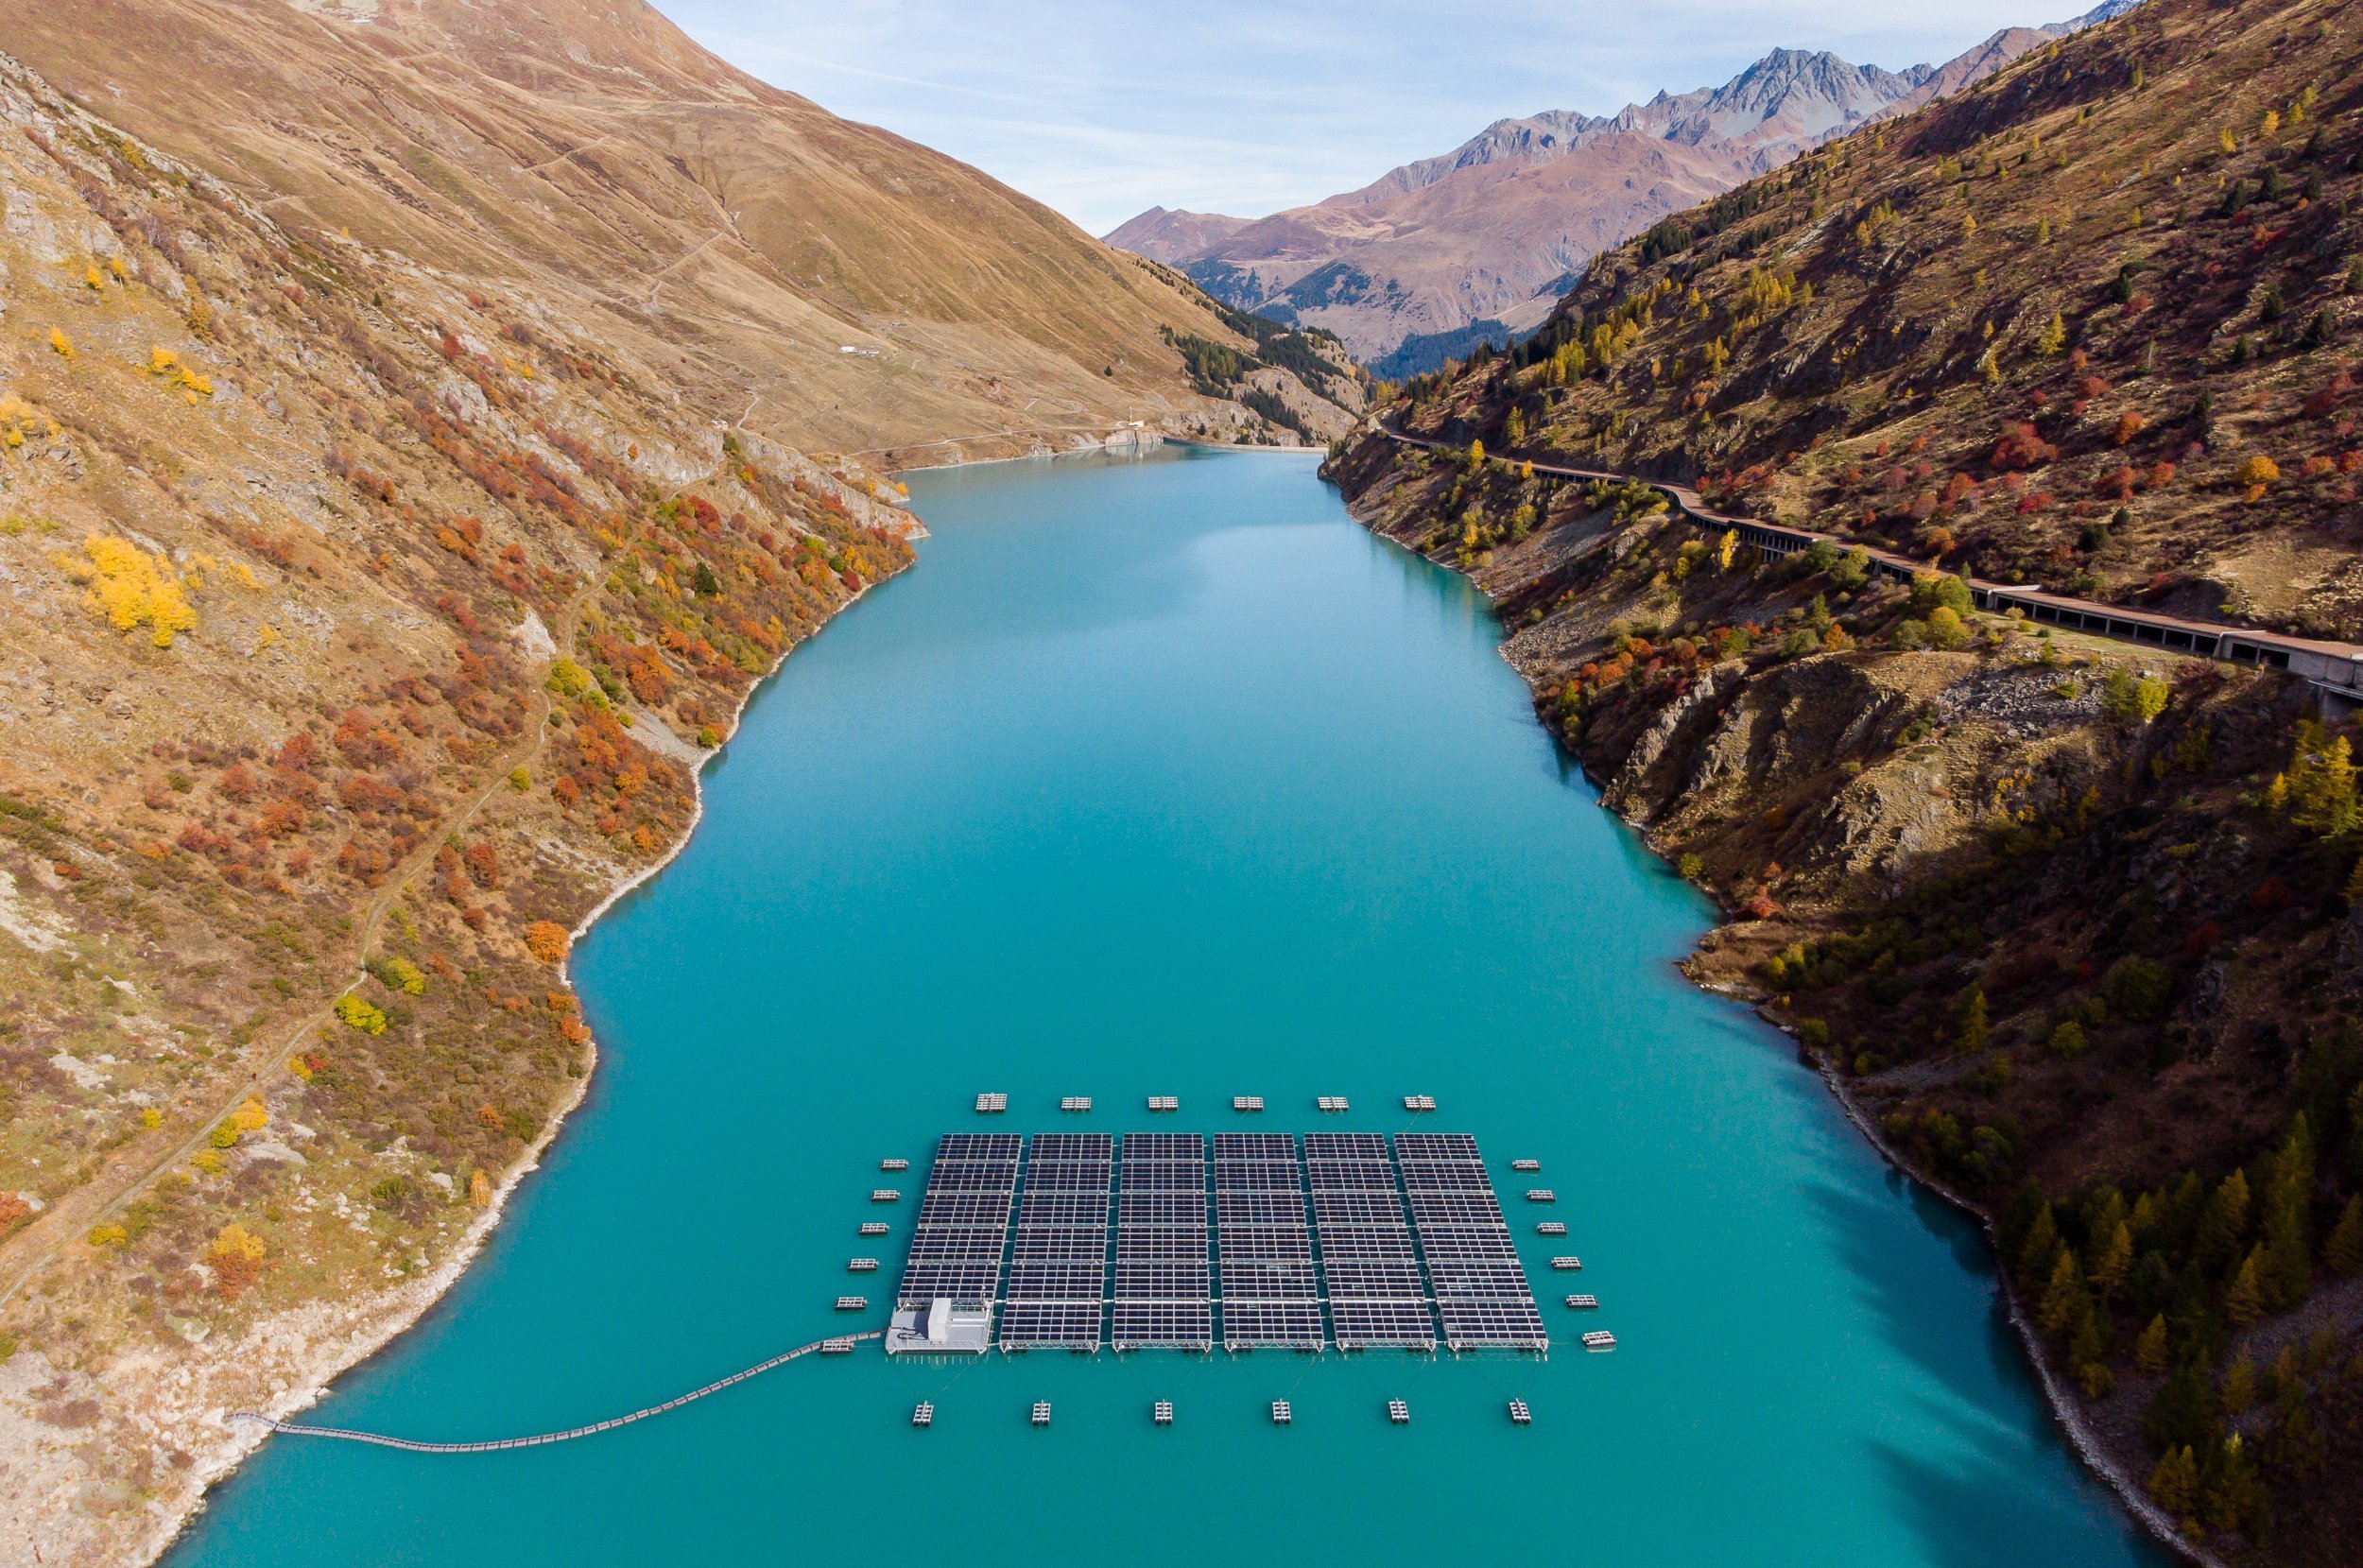 Erneuerbare Energietraeger in Wasser